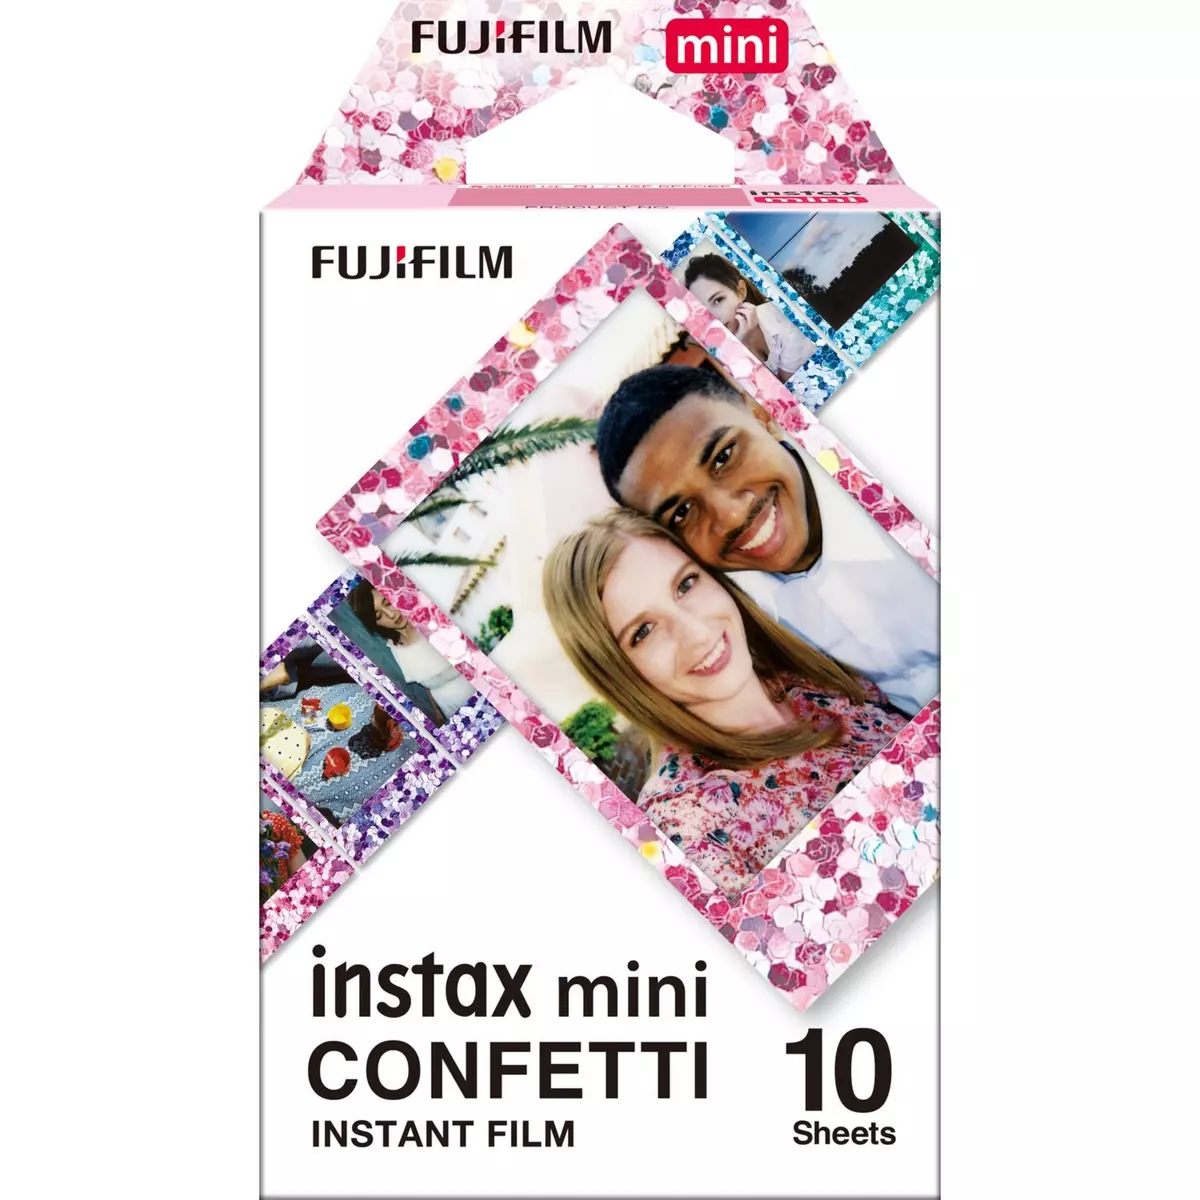 FUJIFILM Film Instax Mini 10 feuilles Confettis